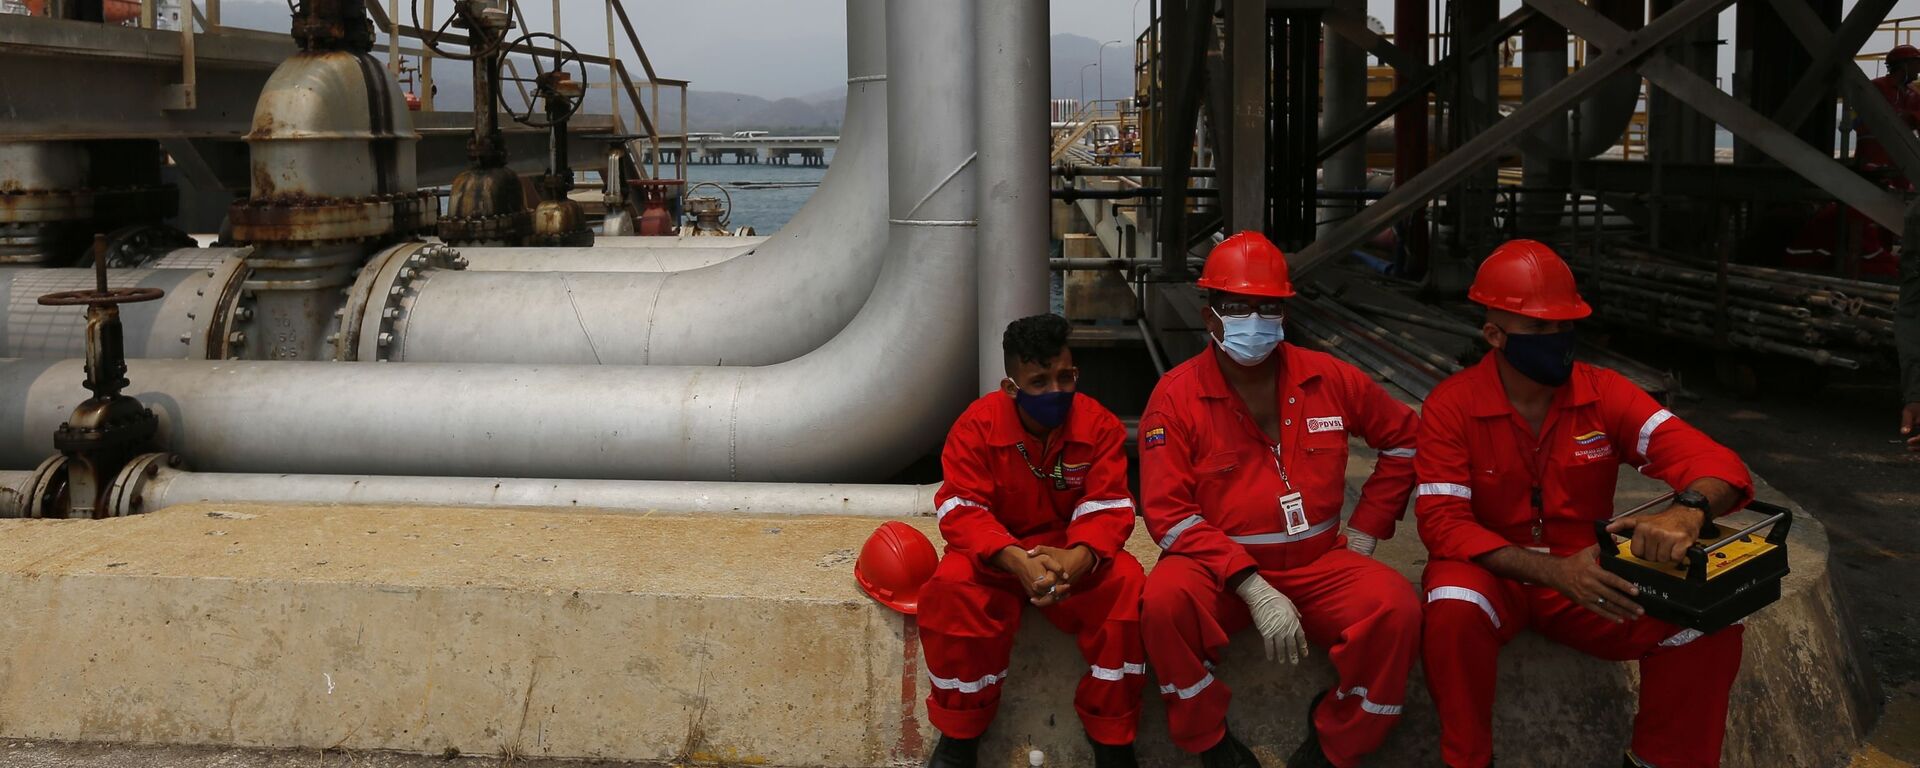 Các công nhân nhà máy lọc dầu Venezuela với lá cờ Iran khi tàu chở dầu Iran tới nước này. - Sputnik Việt Nam, 1920, 02.11.2021